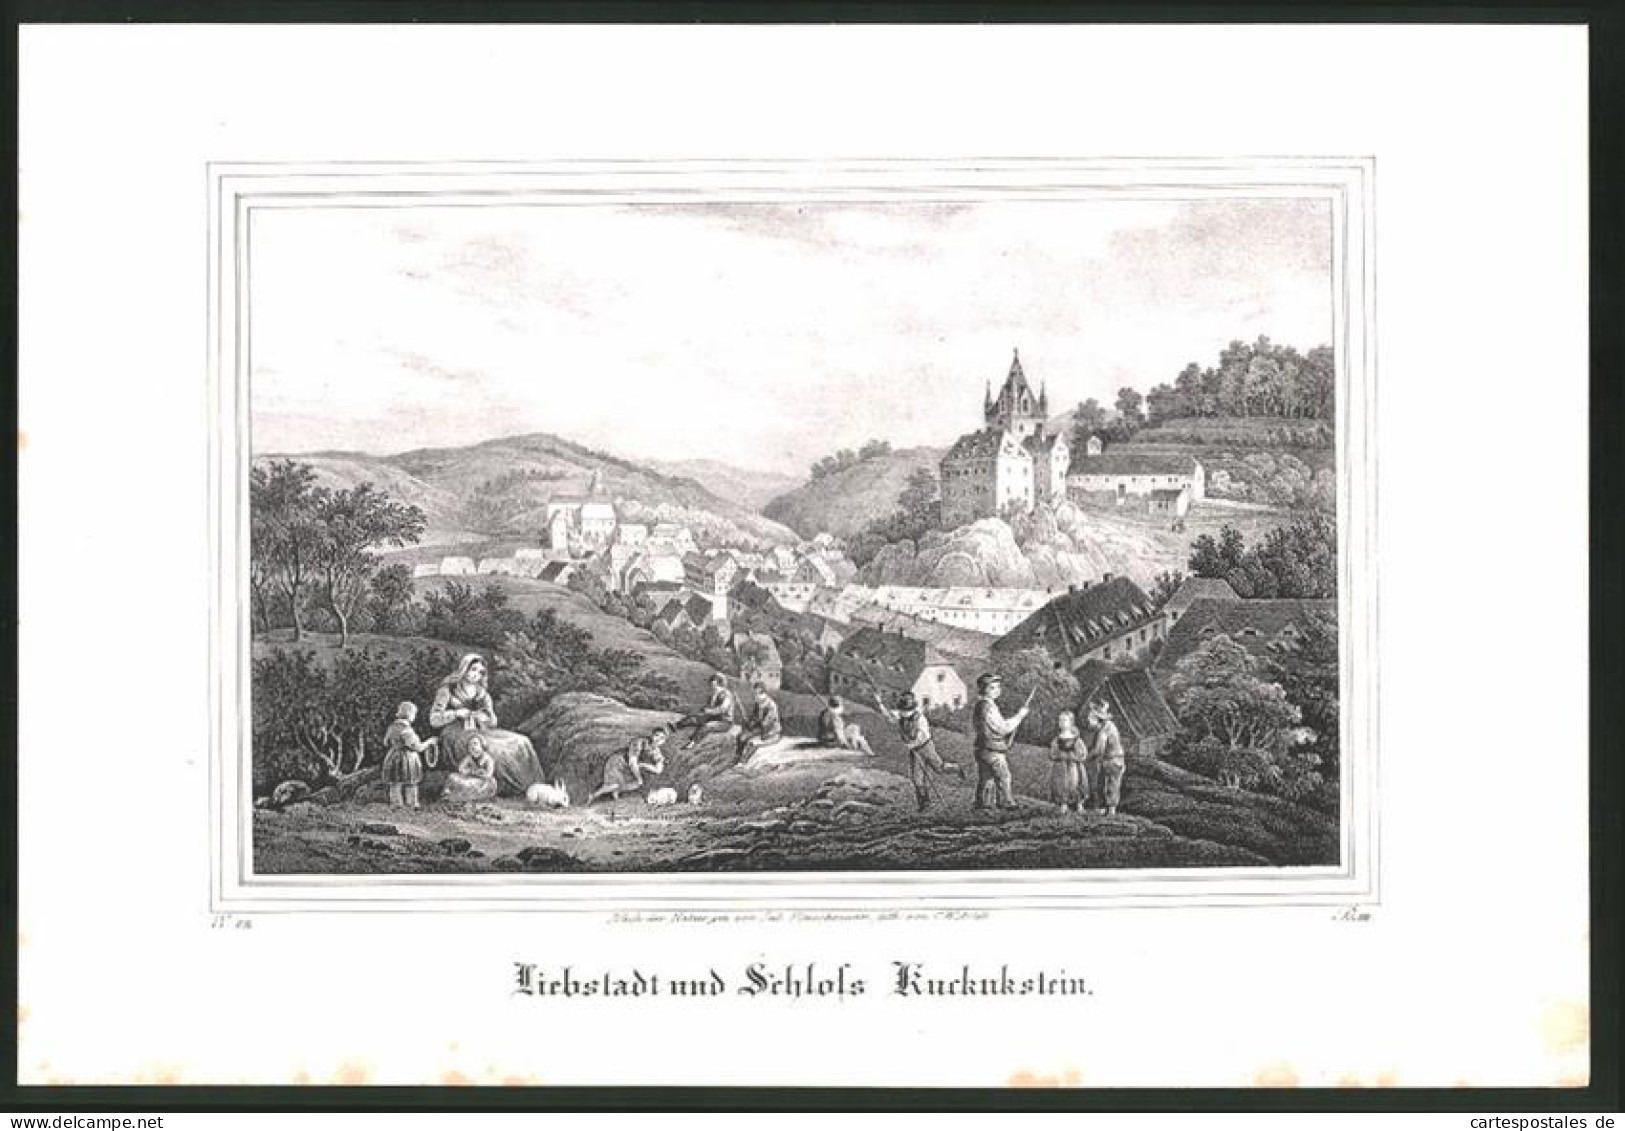 Lithographie Liebstadt, Schloss Kuckukstein, Lithographie Um 1835 Aus Saxonia  - Lithographies